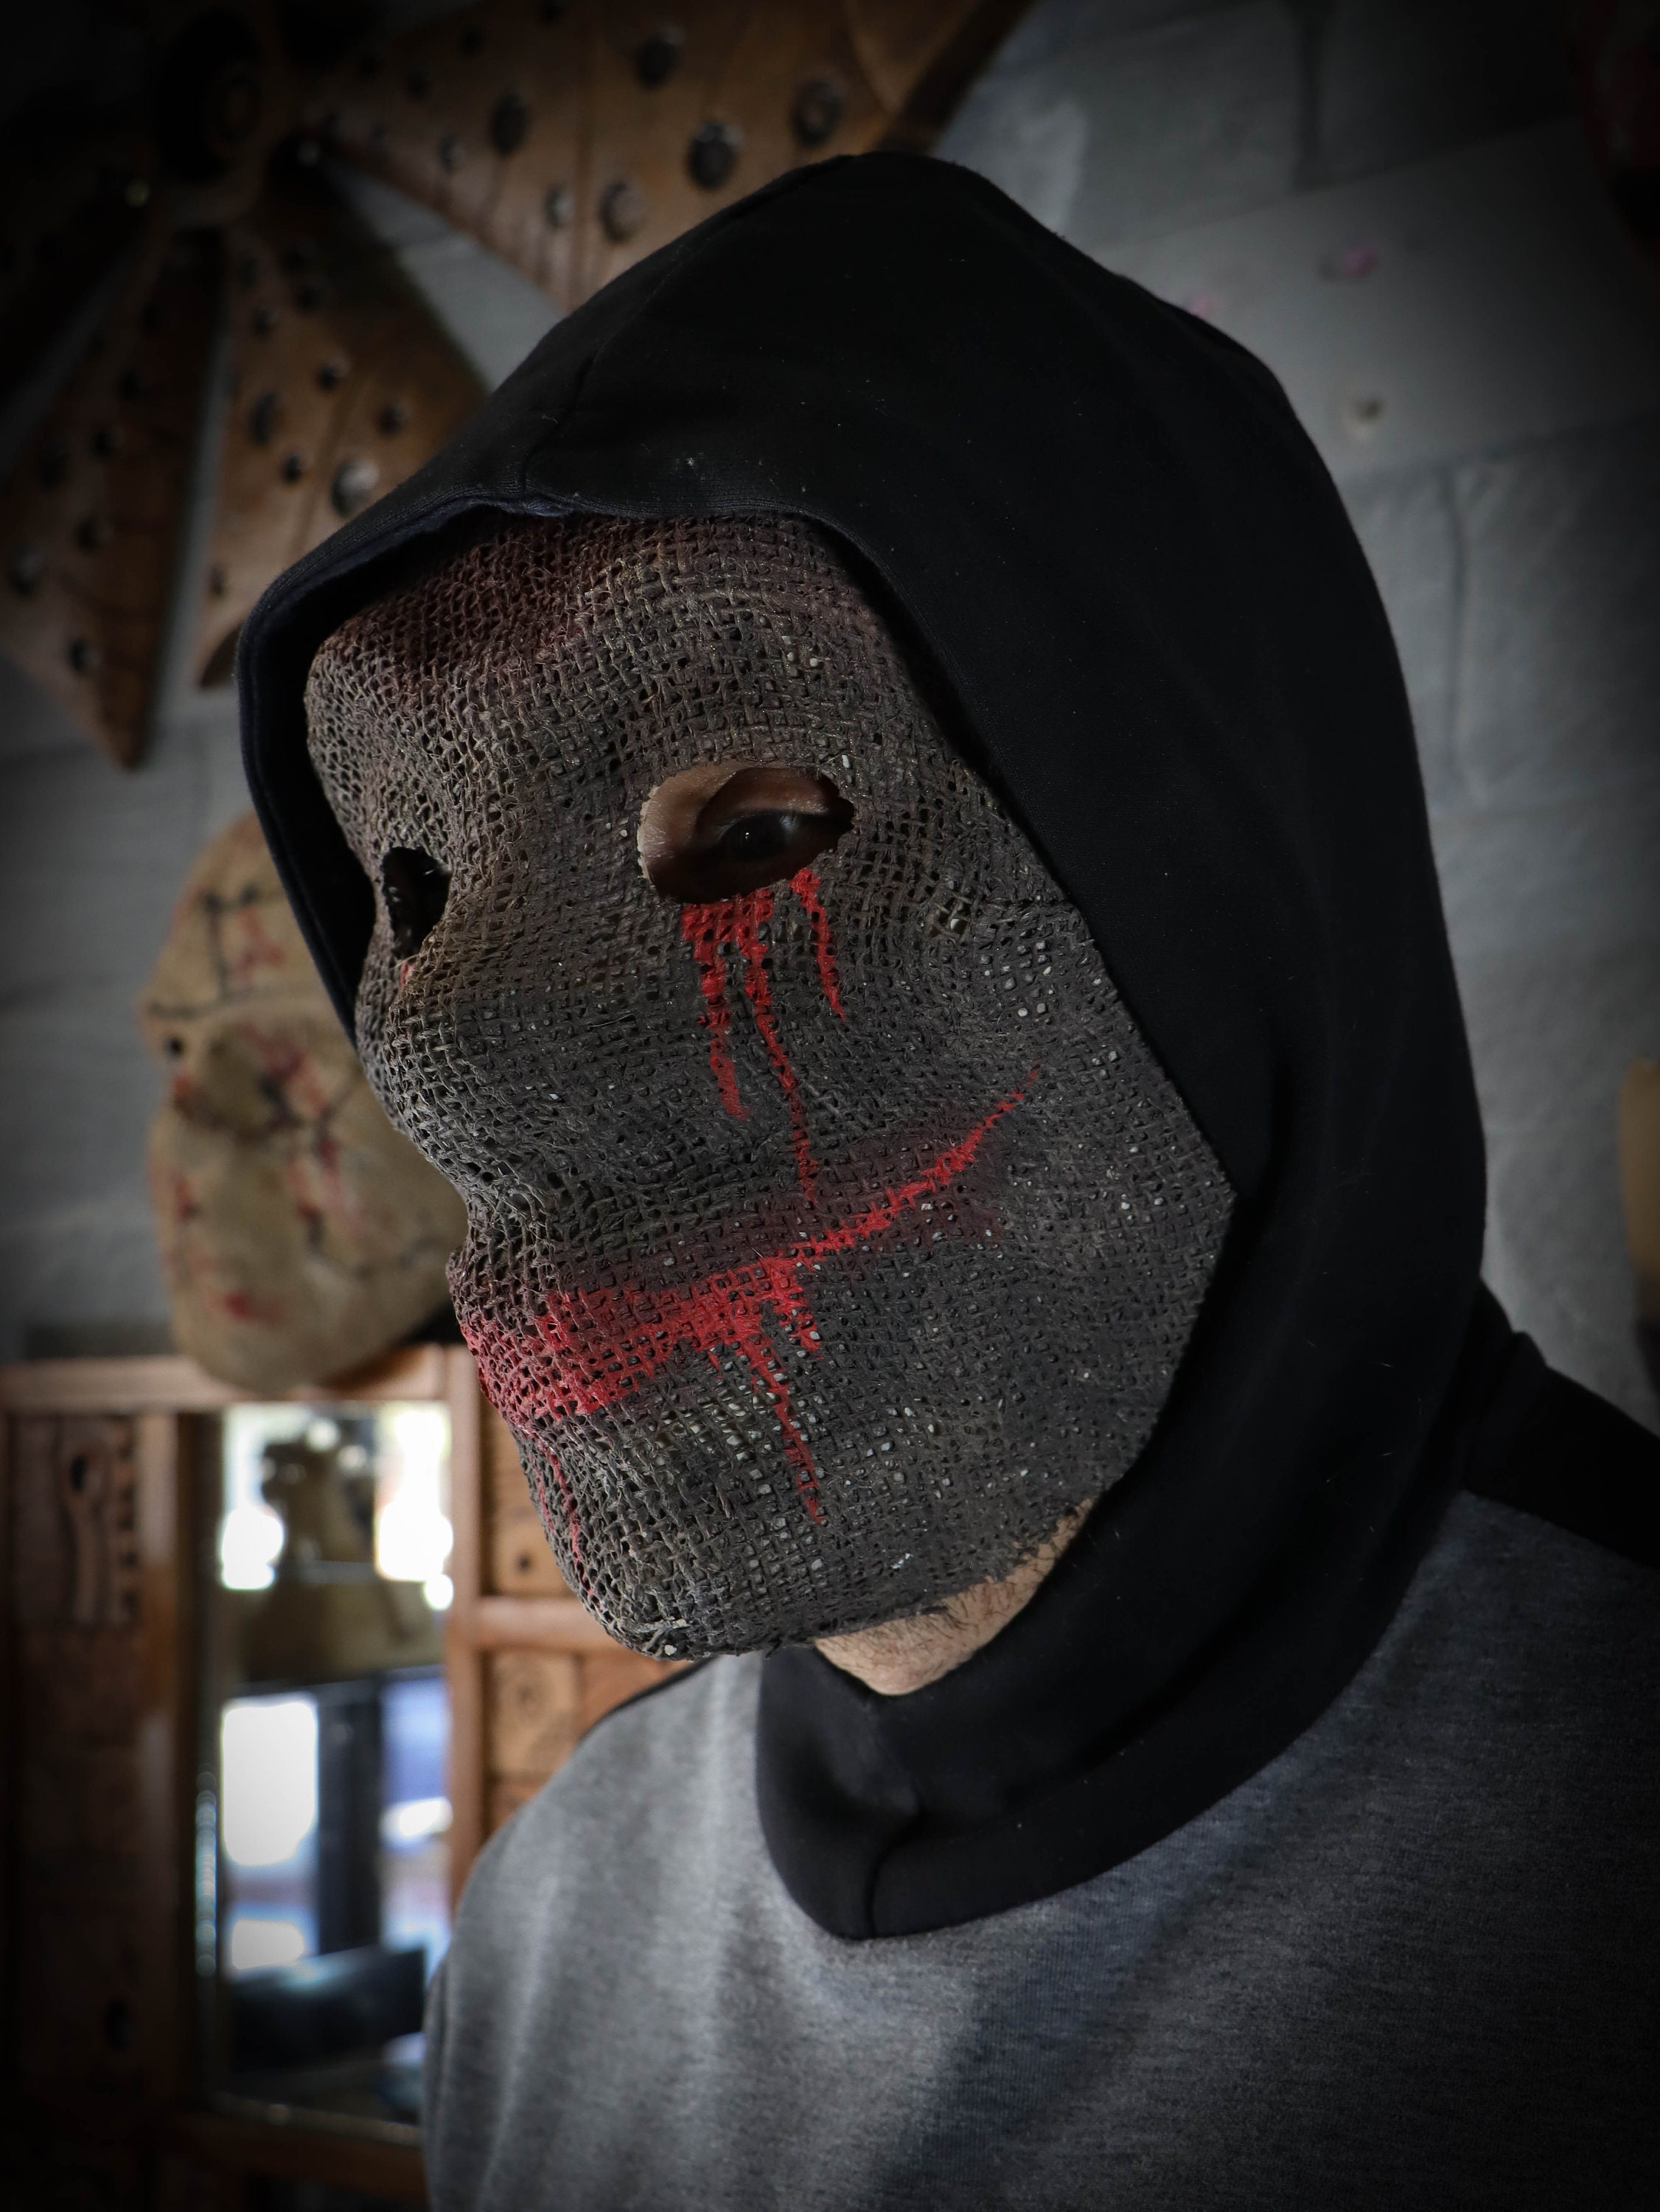 Handmade Halloween Full Face Mask Costume